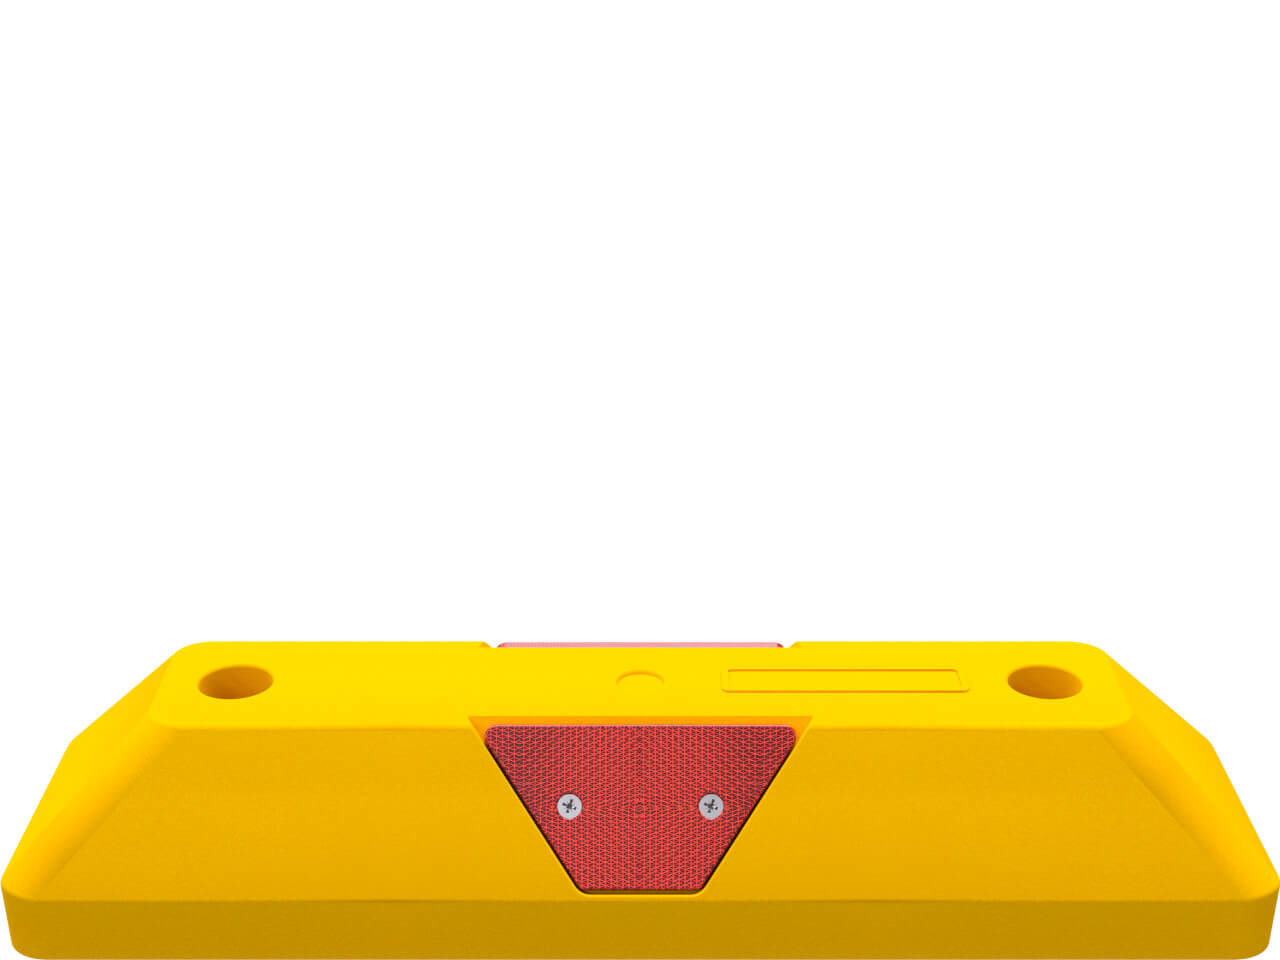 schake leitborde 3393-101 in gelber farbe mit roten reflektoren